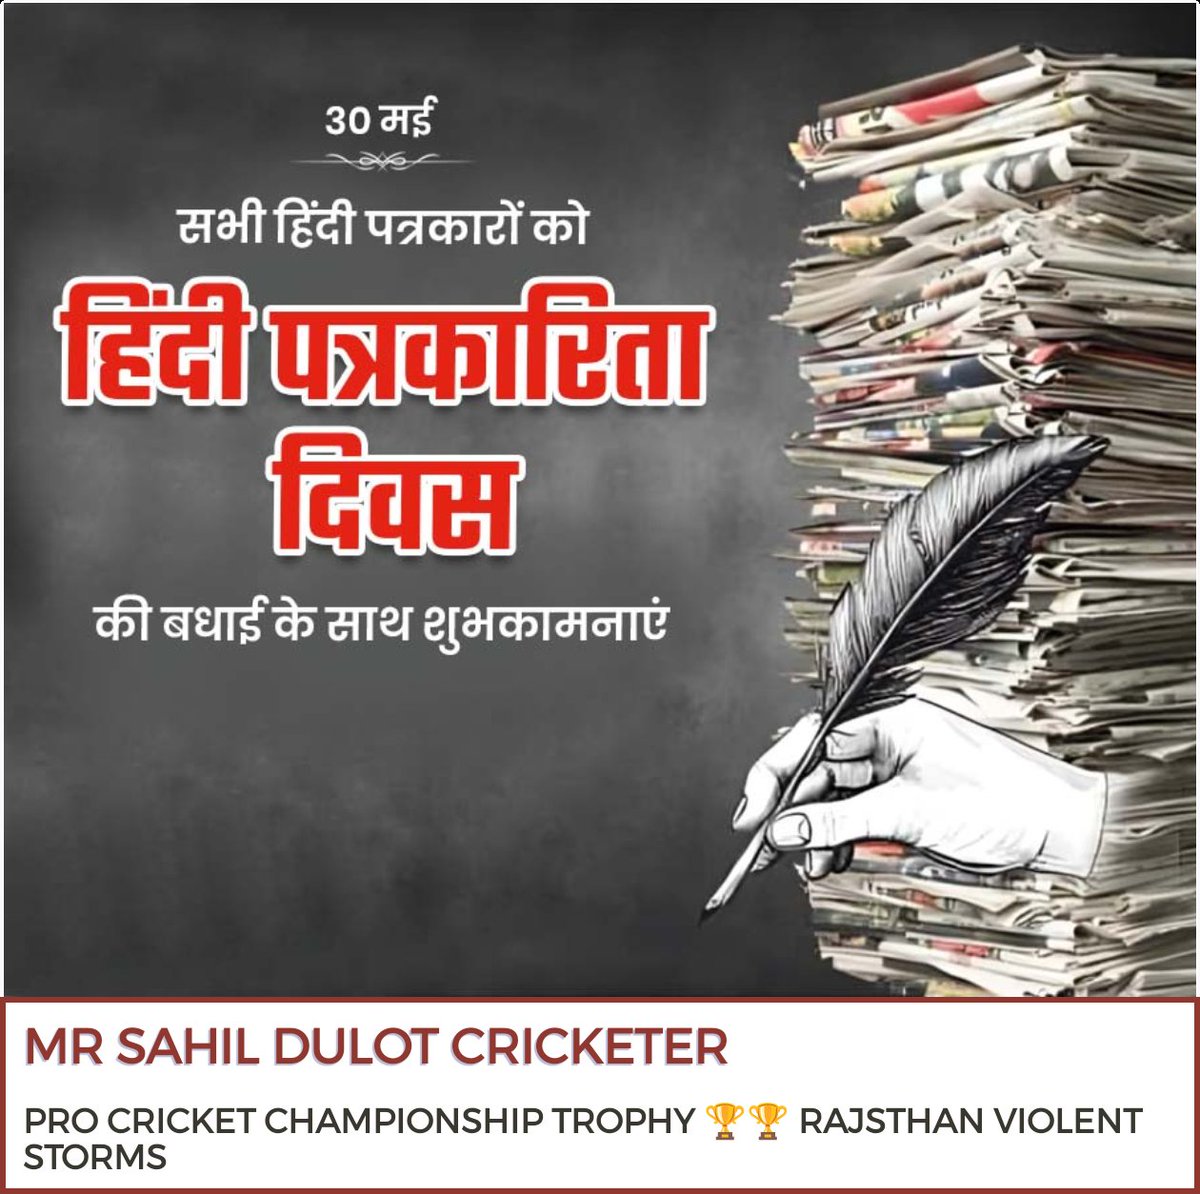 आप सभी पत्रकार बंधुओ को 'हिन्दी पत्रकारिता दिवस' की हार्दिक बधाई एवं आत्मीय शुभकामनाएं।
#हिंदी_पत्रकारिता_दिवस 
#Sahilkhanalwar 
#Cricketer